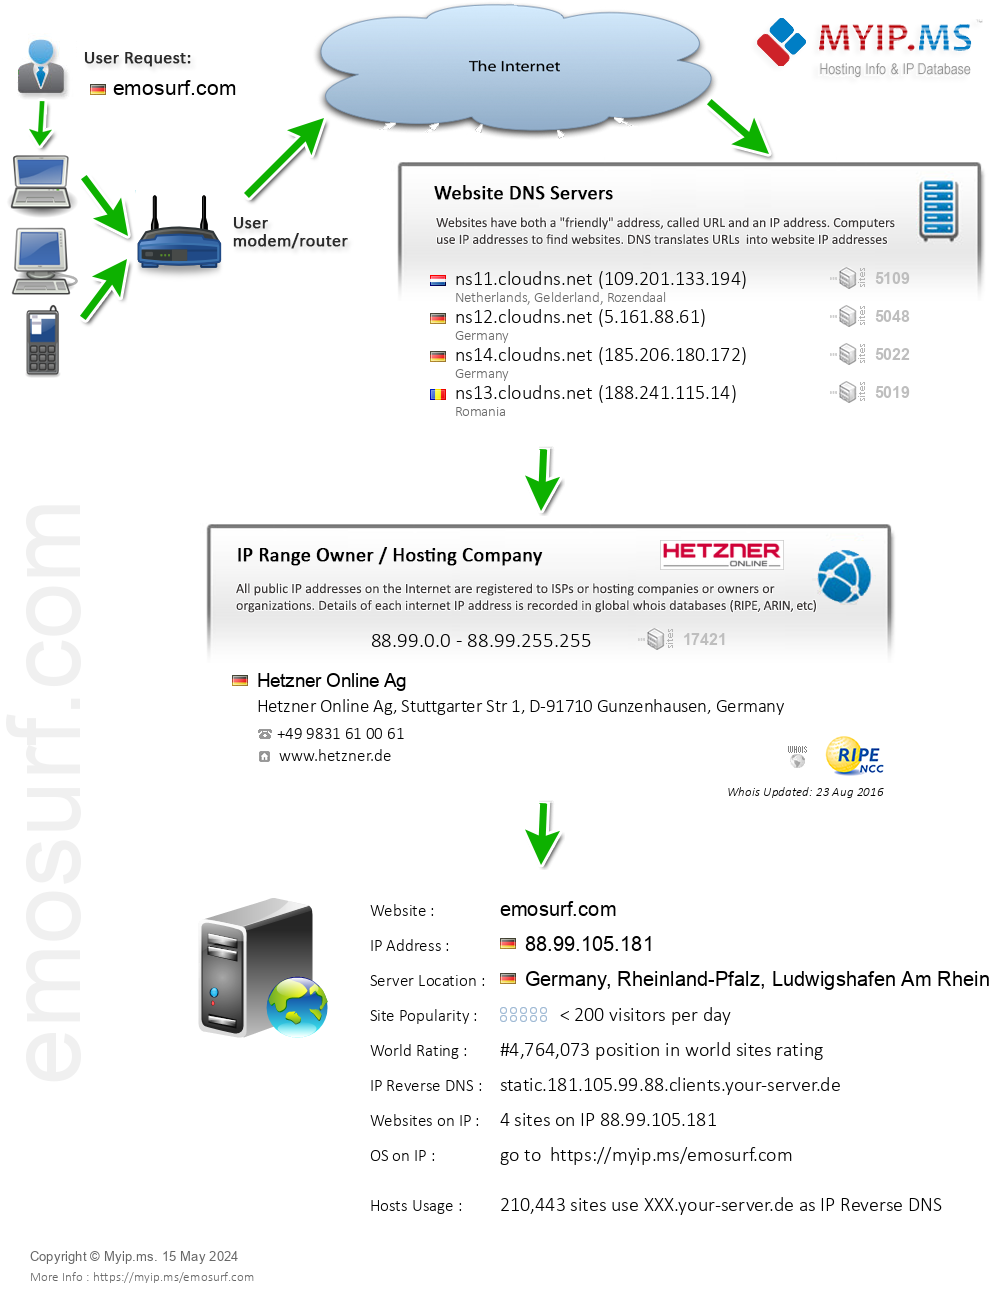 Emosurf.com - Website Hosting Visual IP Diagram